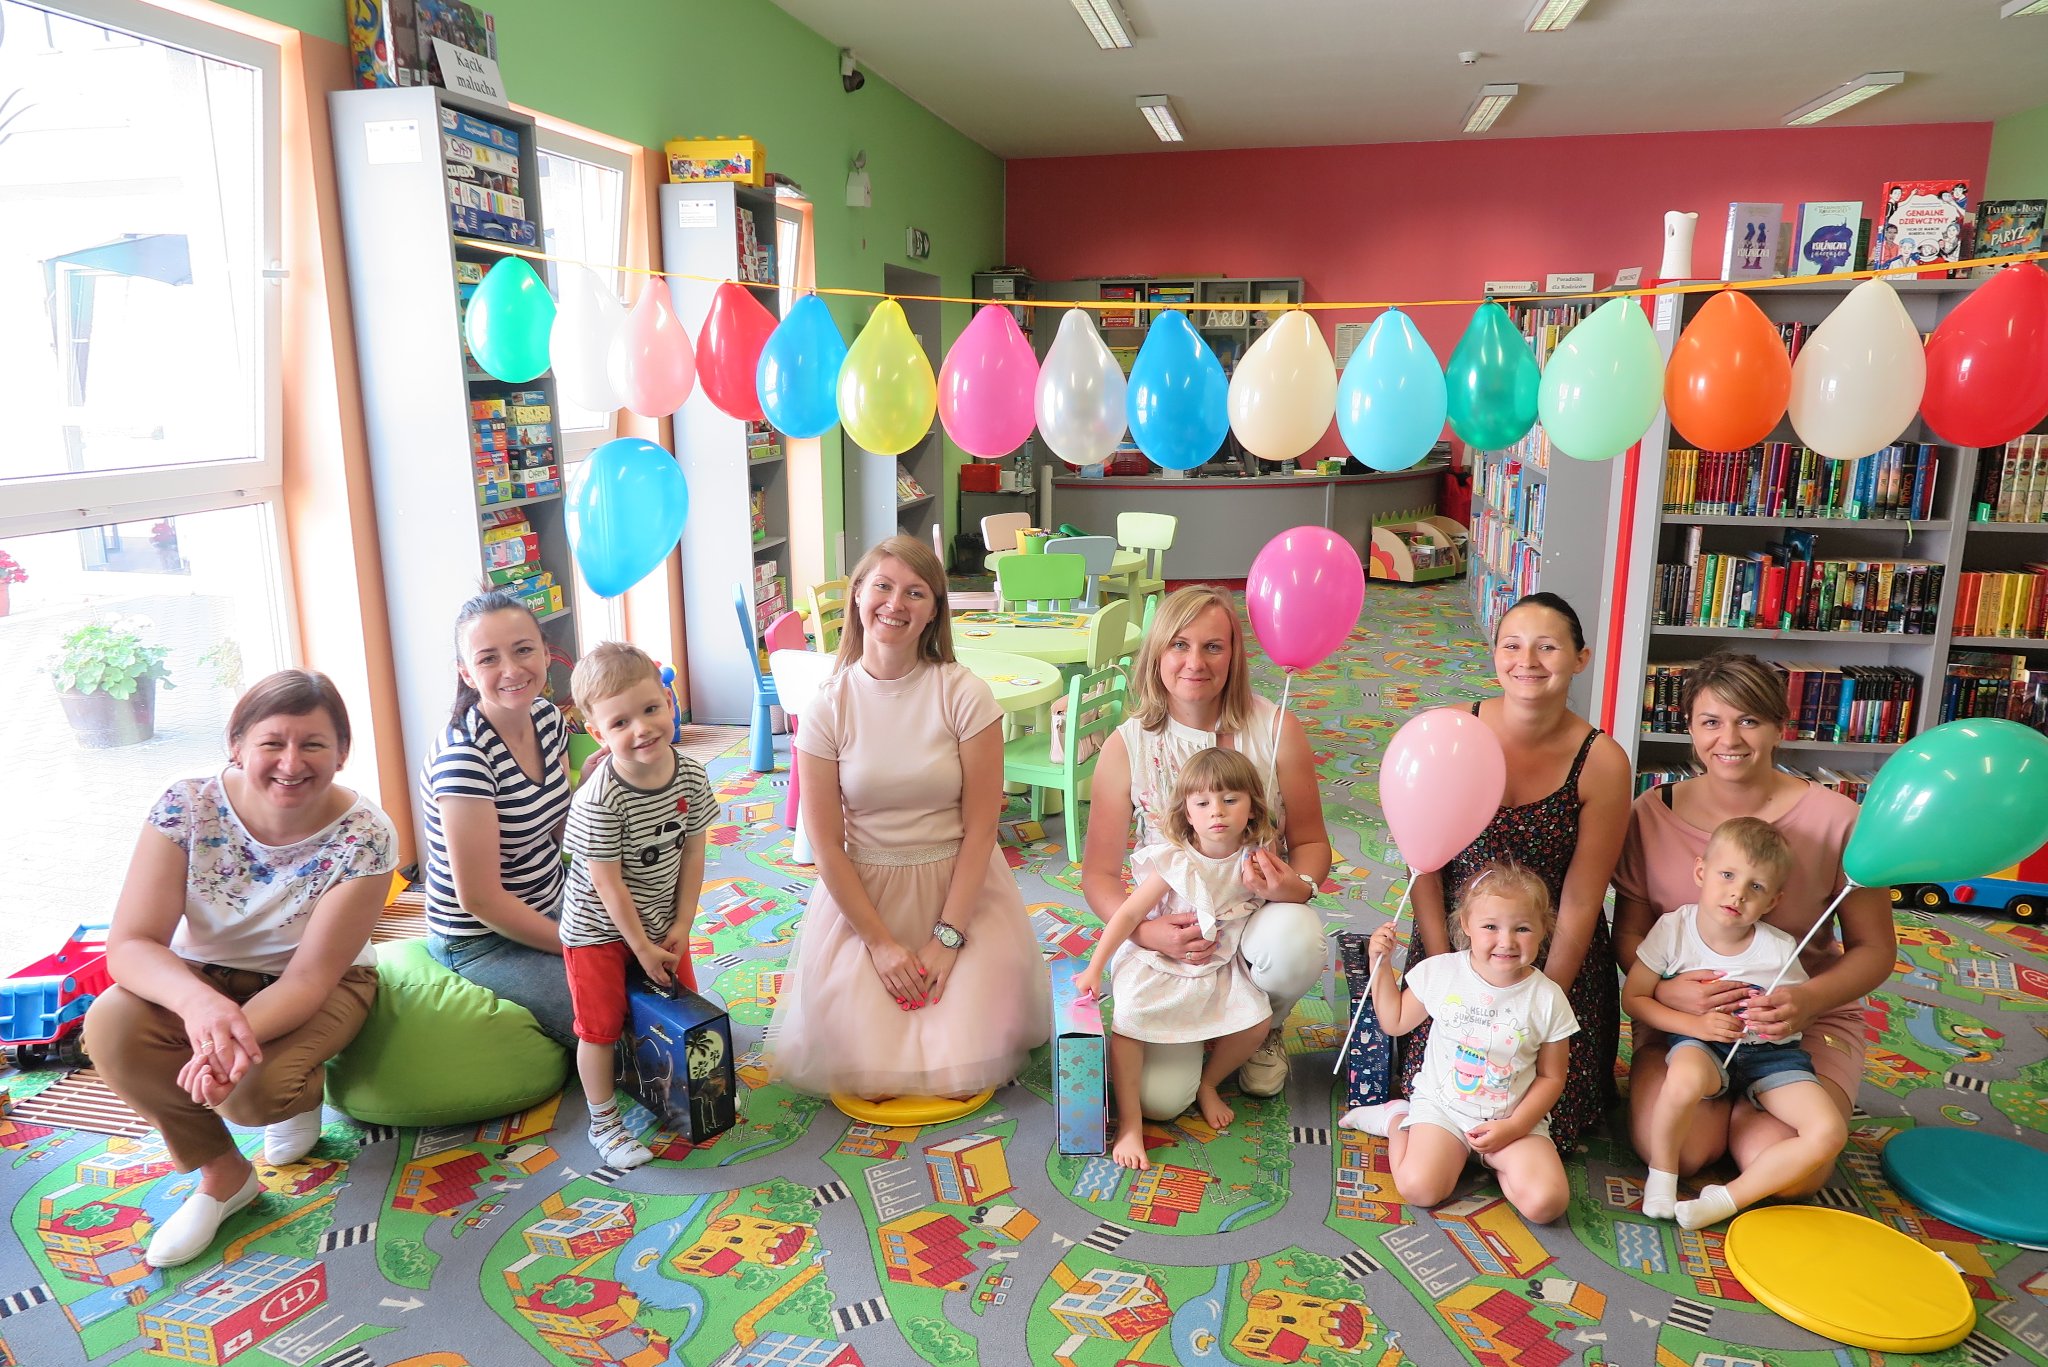 bibliotekarki i dzieci z rodzicami na grupowym zdjęciu, nad głowami wiszą balony